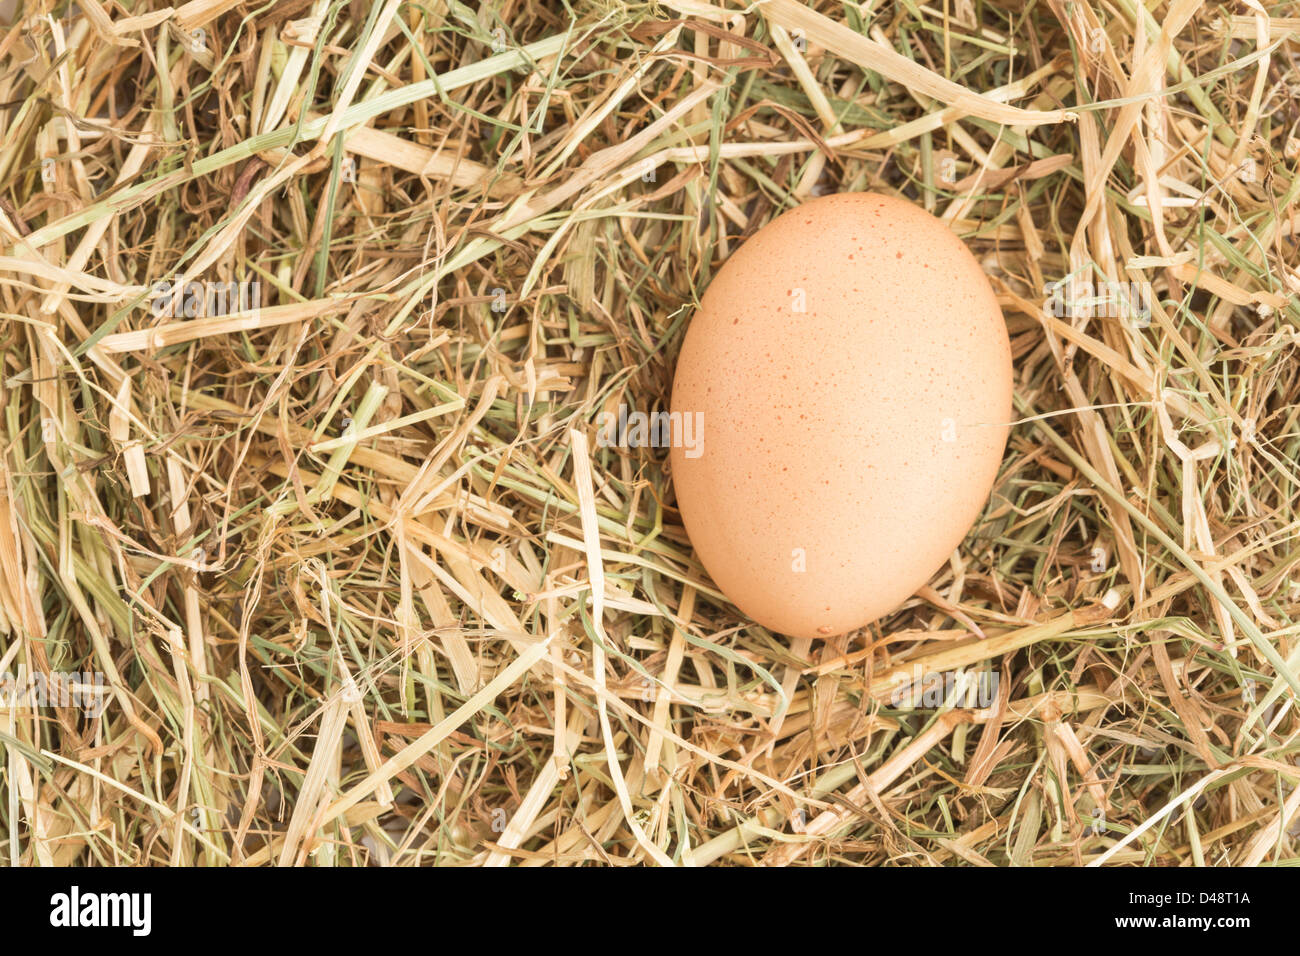 Egg nestled in straw Stock Photo